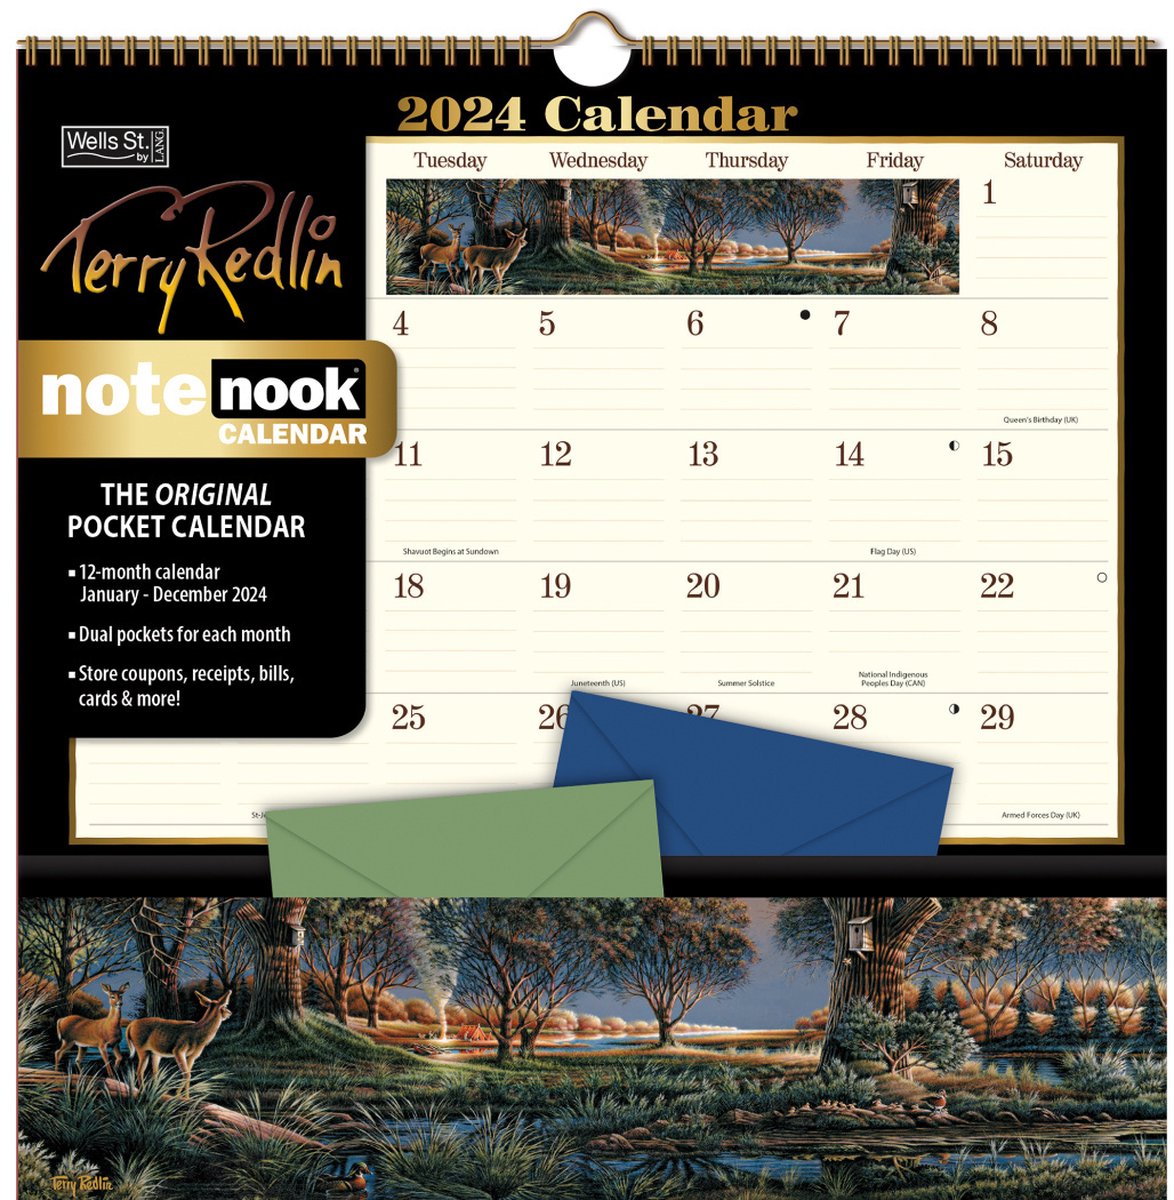 Terry Redlin Pocket Note Nook Kalender 2024